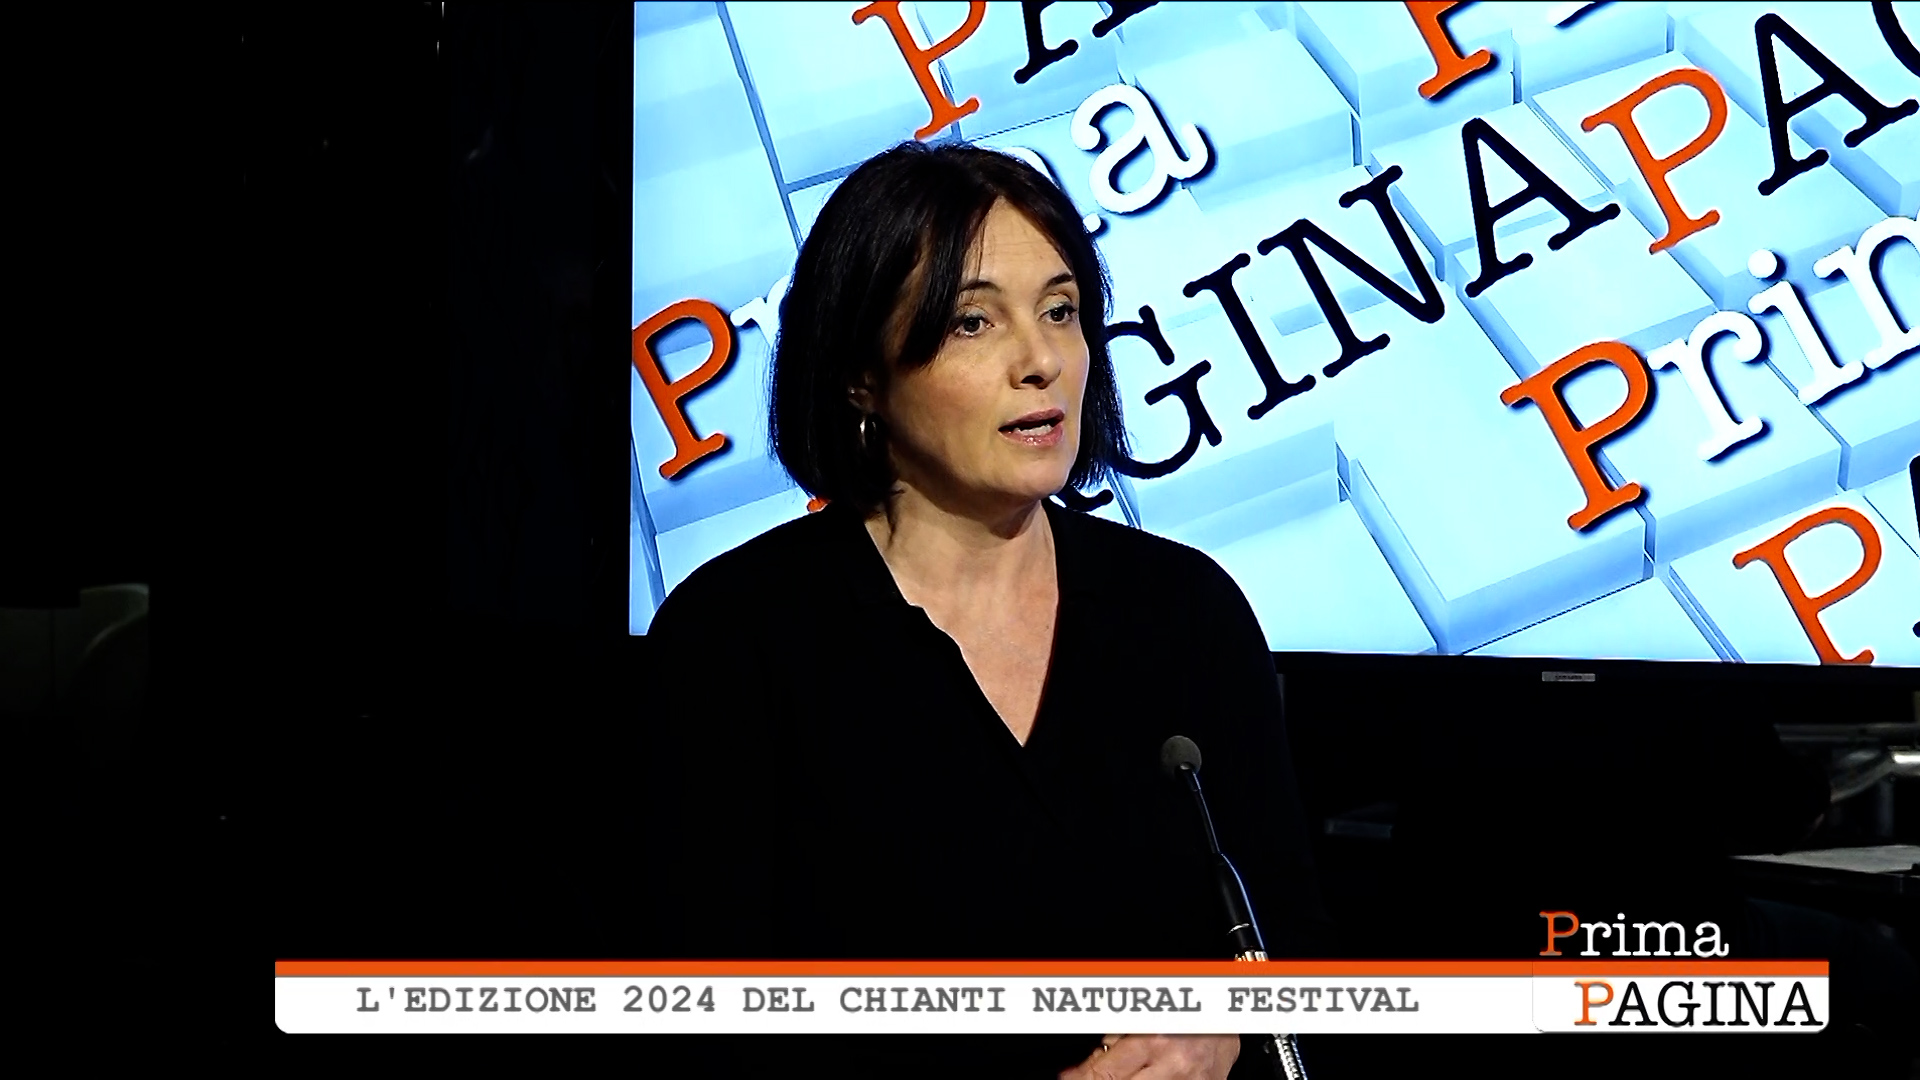 Prima Pagina - L'edizione 2024 del Chianti Natural Festival - in studio Deborah Montagnani